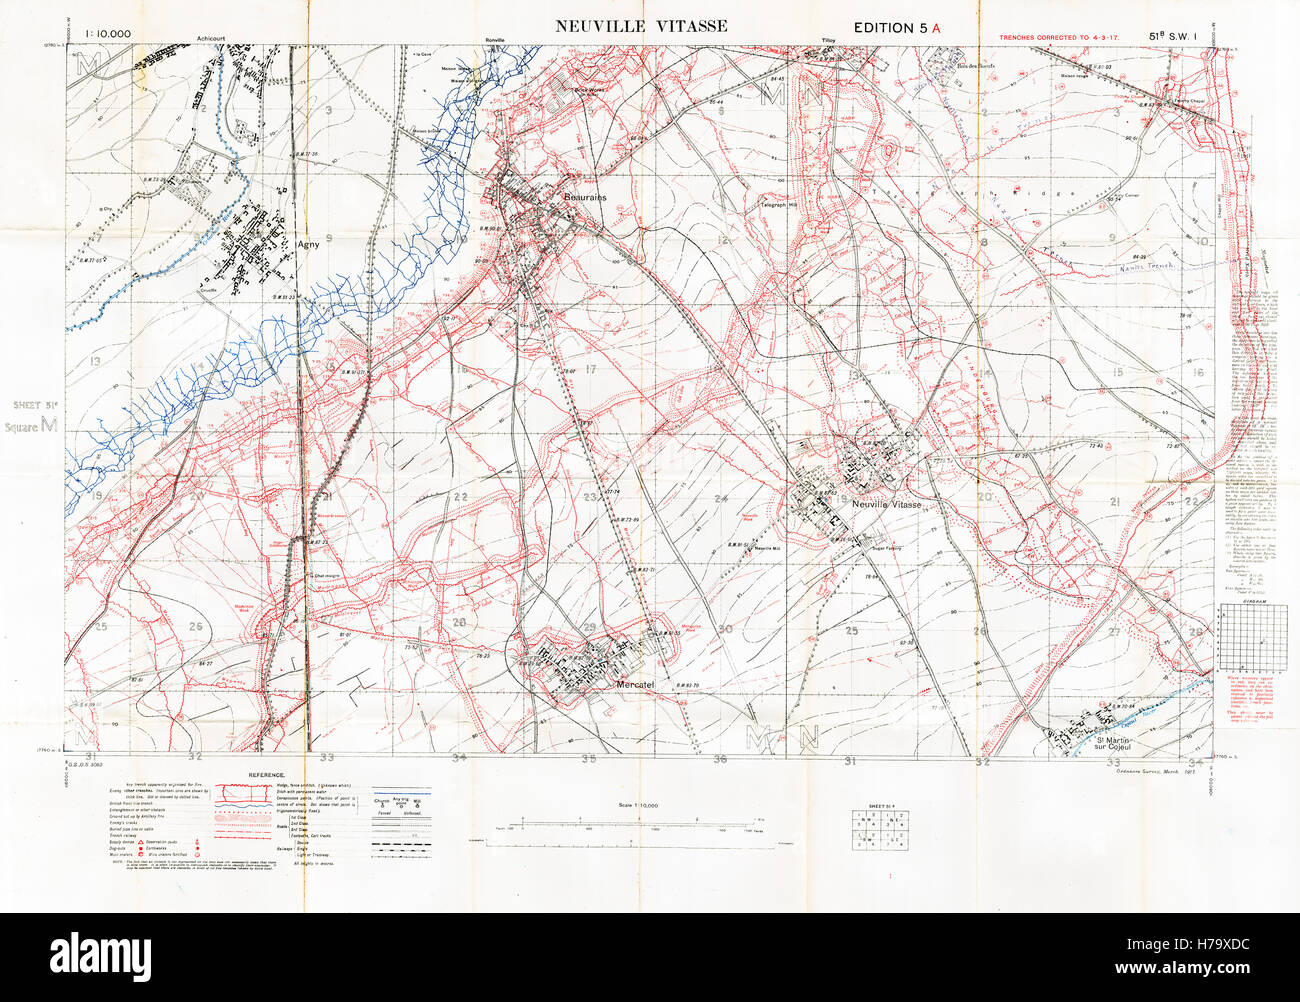 Neuville Vitasse Plan de bataille, 1917 Edition 5A 1:10 000 carte militaire des Britanniques le secteur sud est d'Arras, dans le Nord de la France, avec square 51B SW1, des tranchées corrects à Mars 1917 Banque D'Images